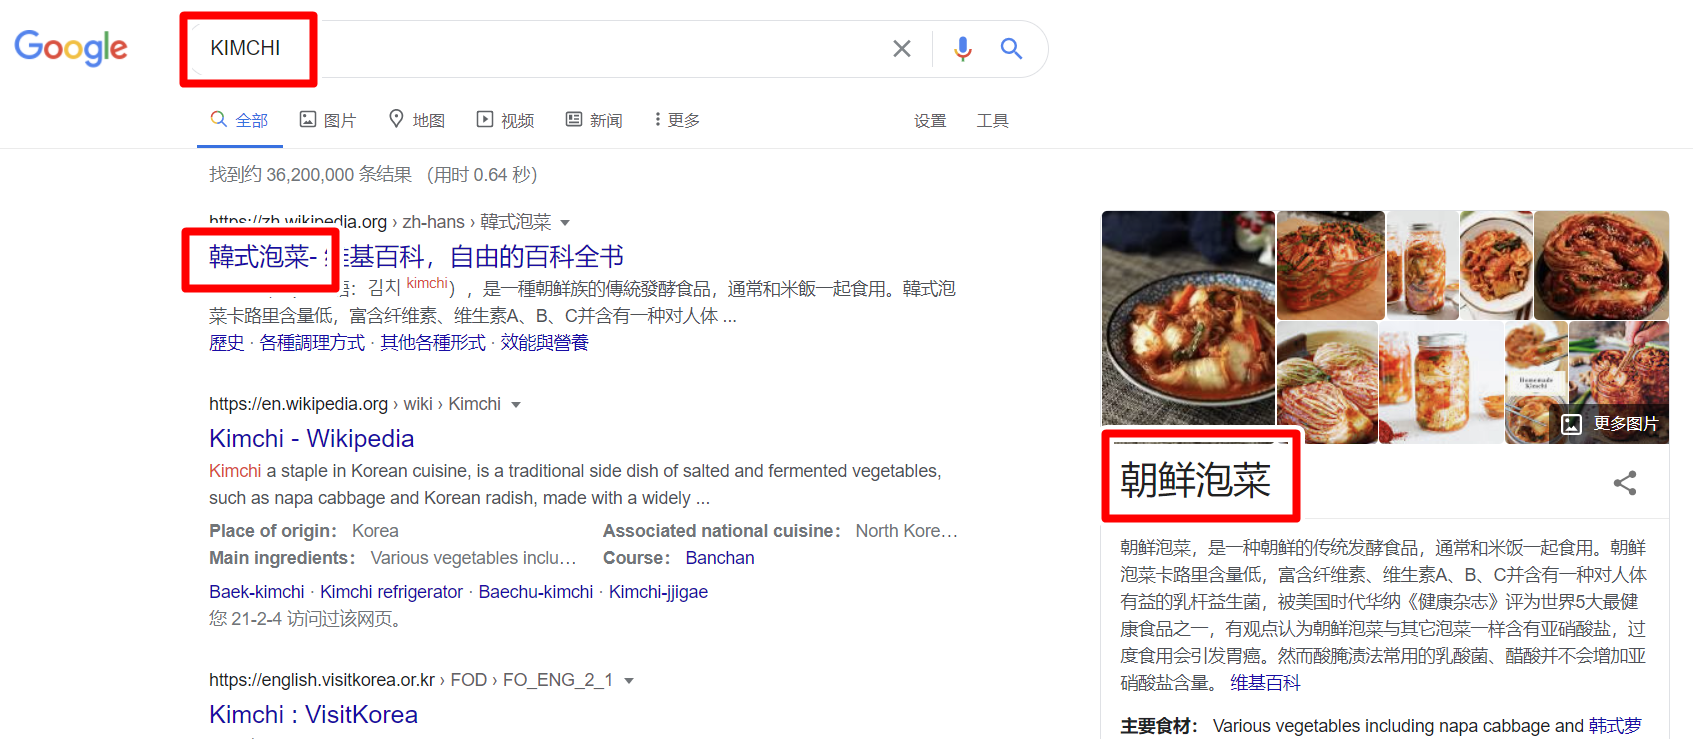 ▲  언어를 중국어(간체)로 설정하고 구글에서 '김치'를 검색한 결과 '한국김치' 또는 '북한김치'라는 정보가 나온다.